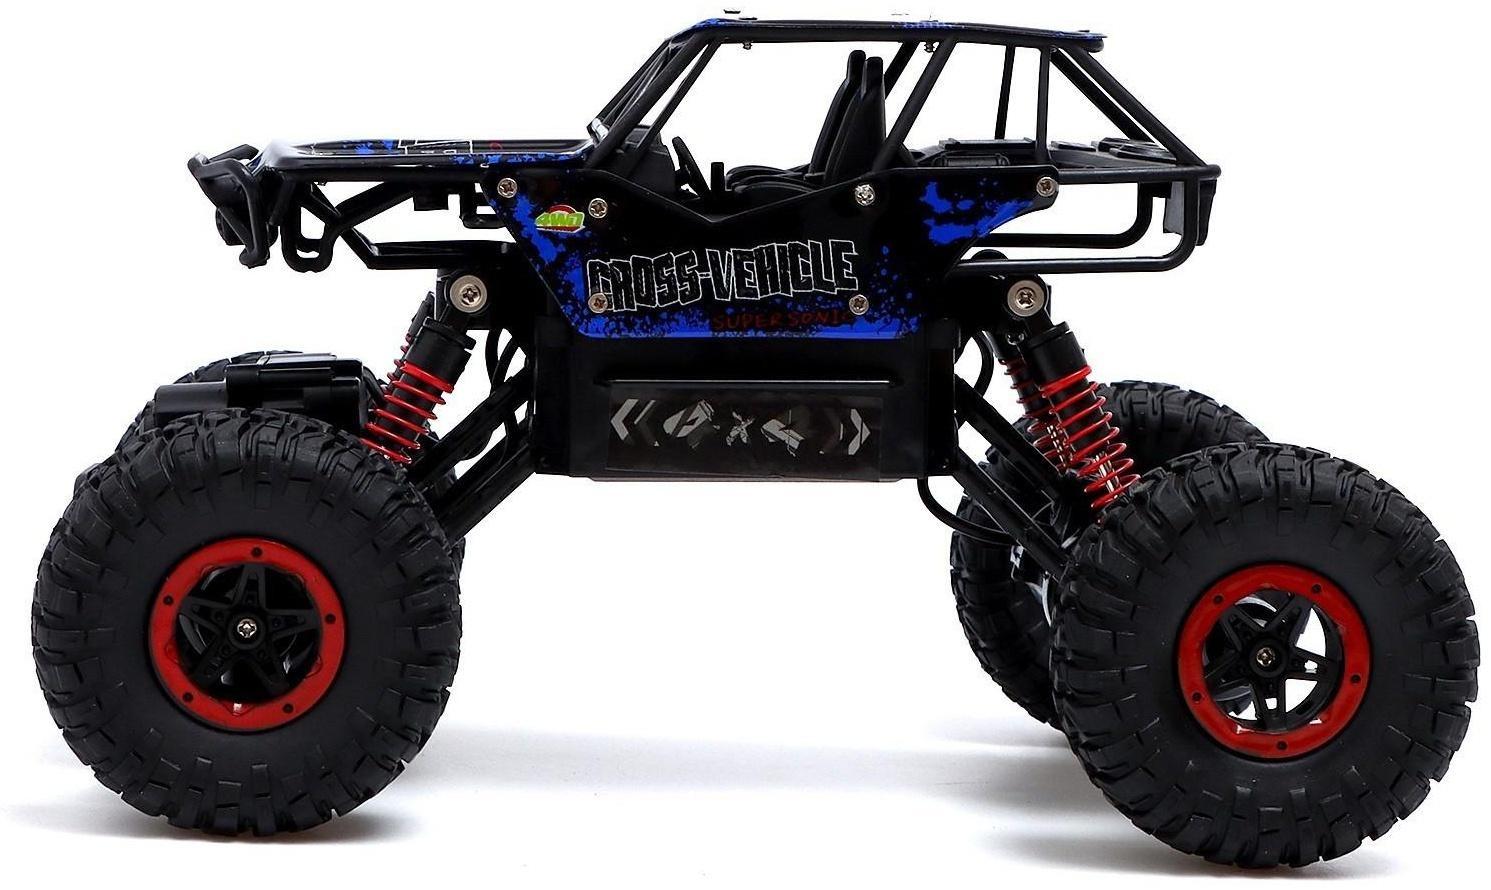 Джип радиоуправляемый Monster, 1:16, 4WD, работает от аккумулятора, цвет синий